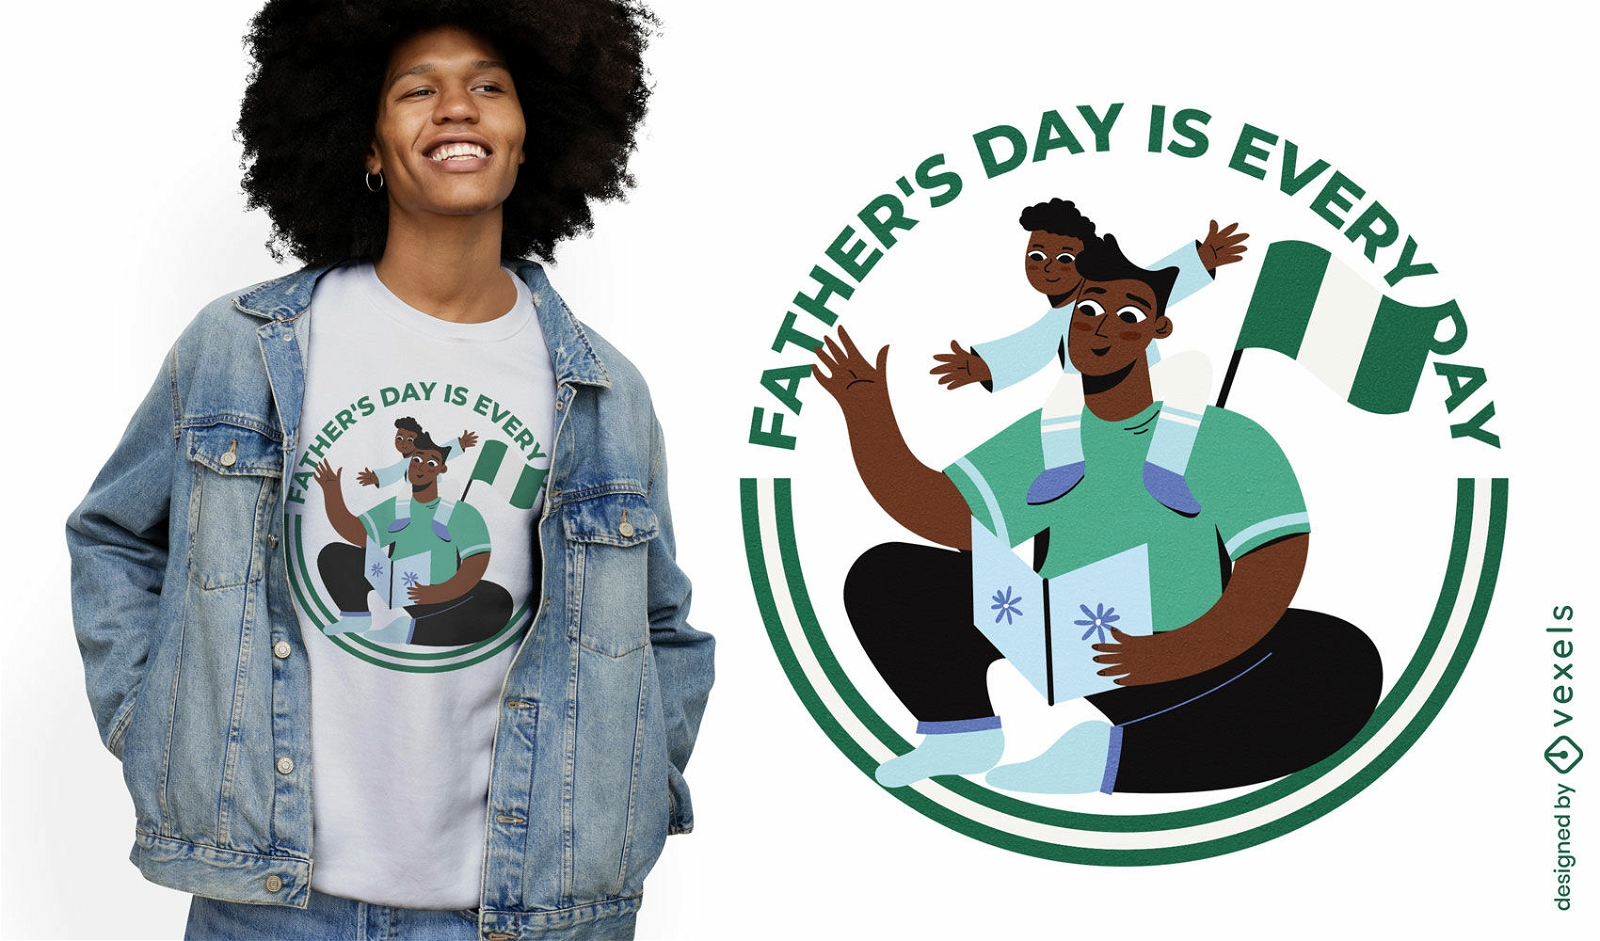 El día del padre es todos los días diseño de camiseta.